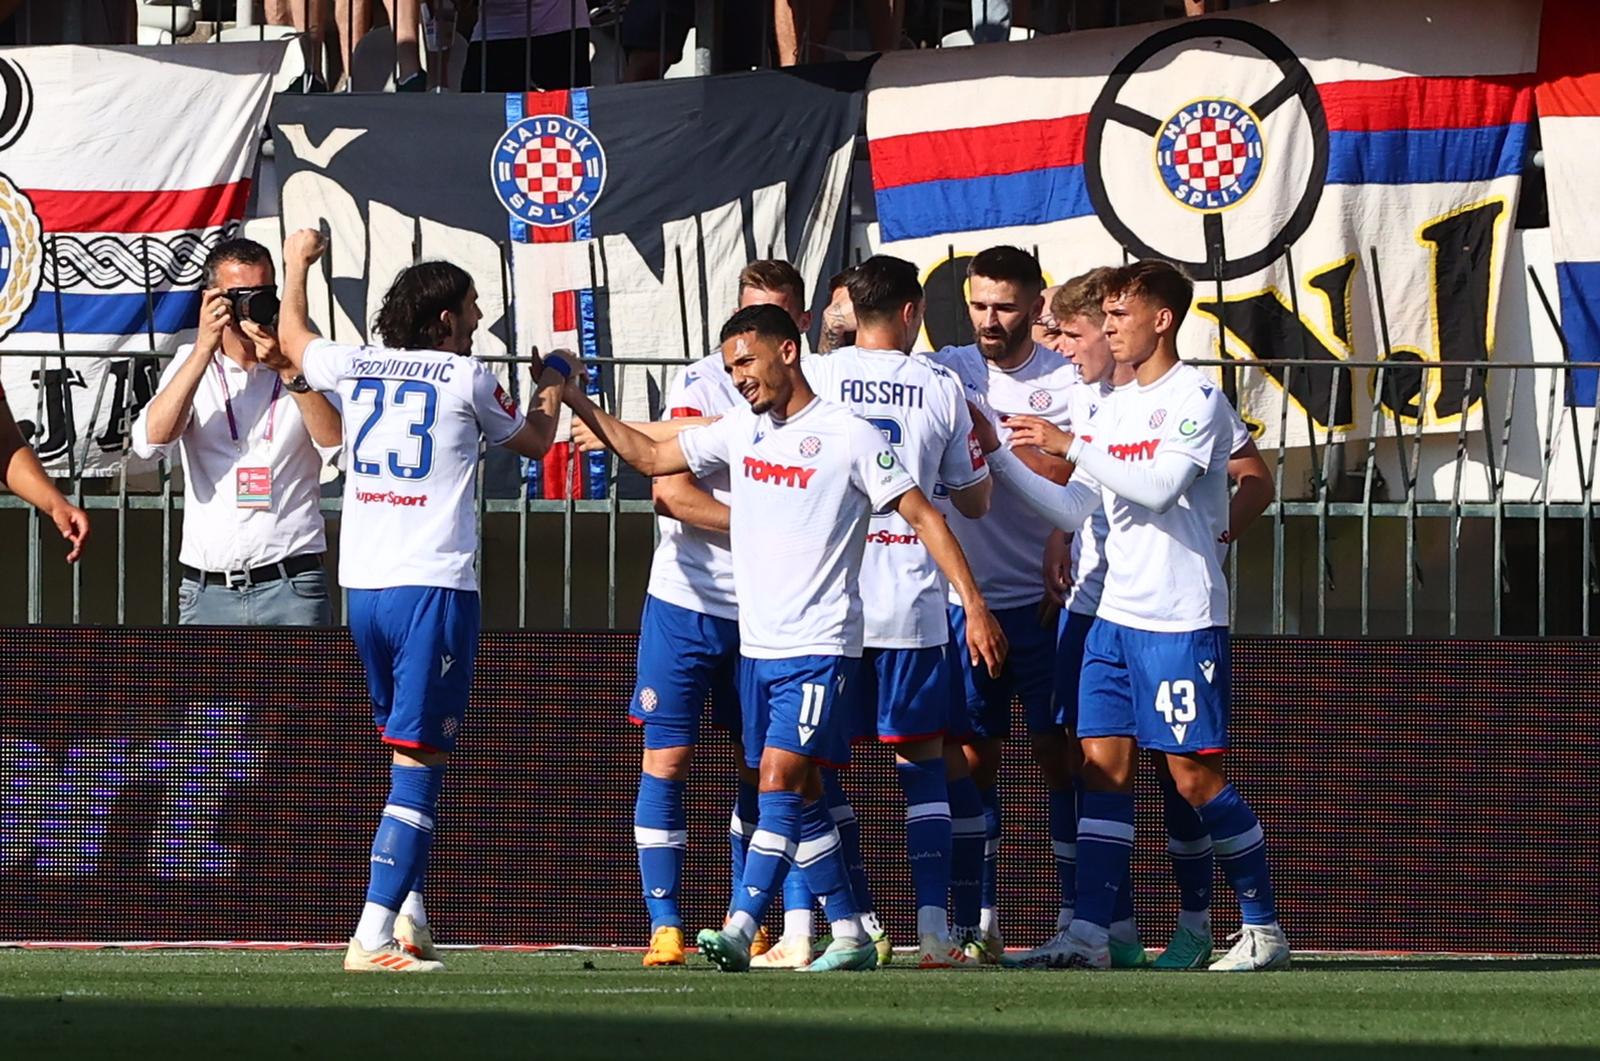 28.05.2023., Stadion Poljud, Split - Utakmica 36. kola Supersport HNL-a: Hajduk - Sibenik. Photo: Miroslav Lelas/PIXSELL